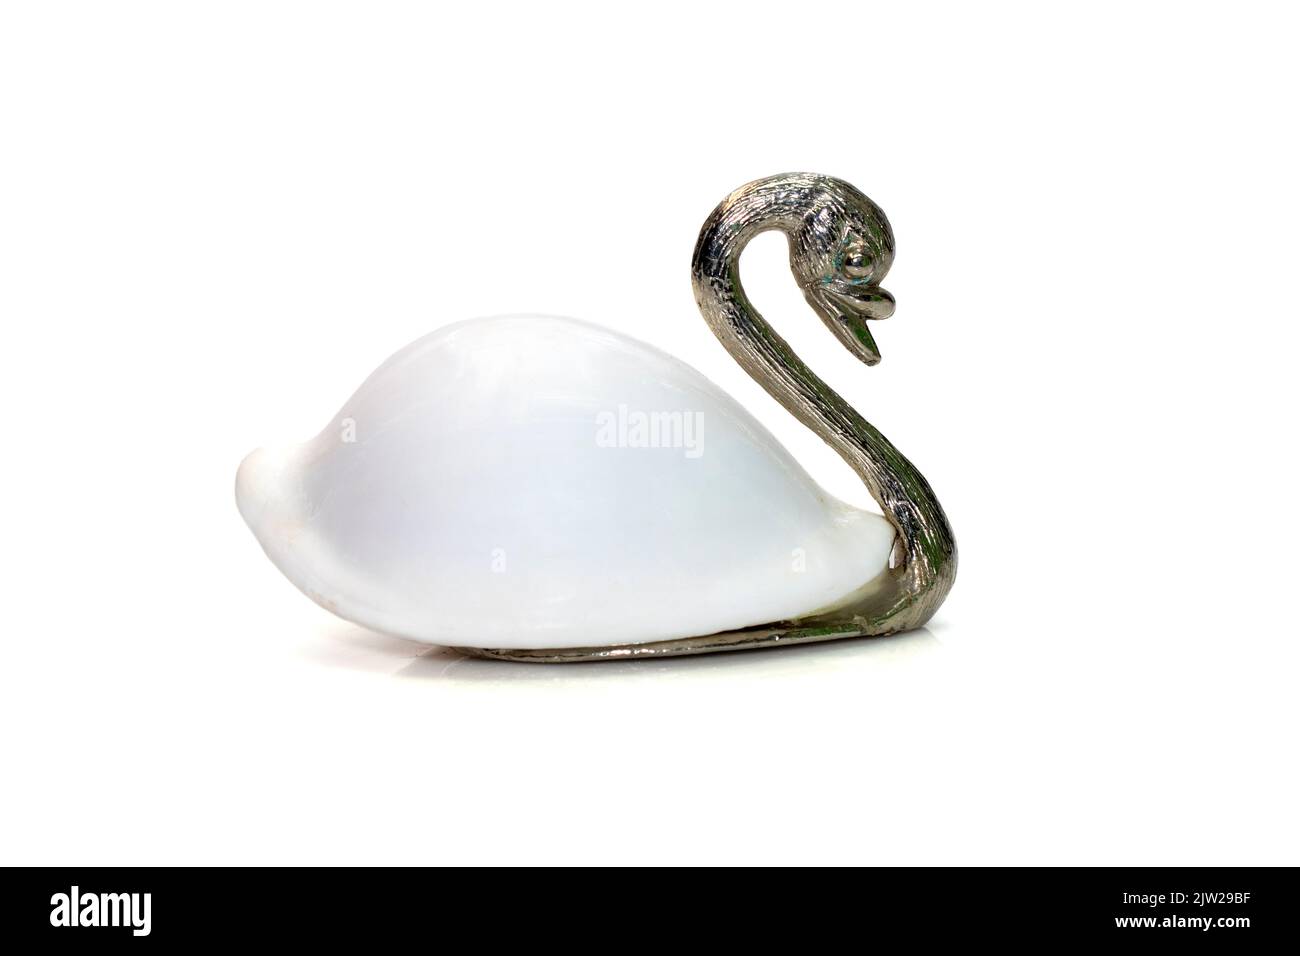 Immagine di scultura di cigno con conchiglie bianche (Ovula ovum) come parte del suo corpo. Isolato su sfondo bianco. Decorazione domestica. Foto Stock